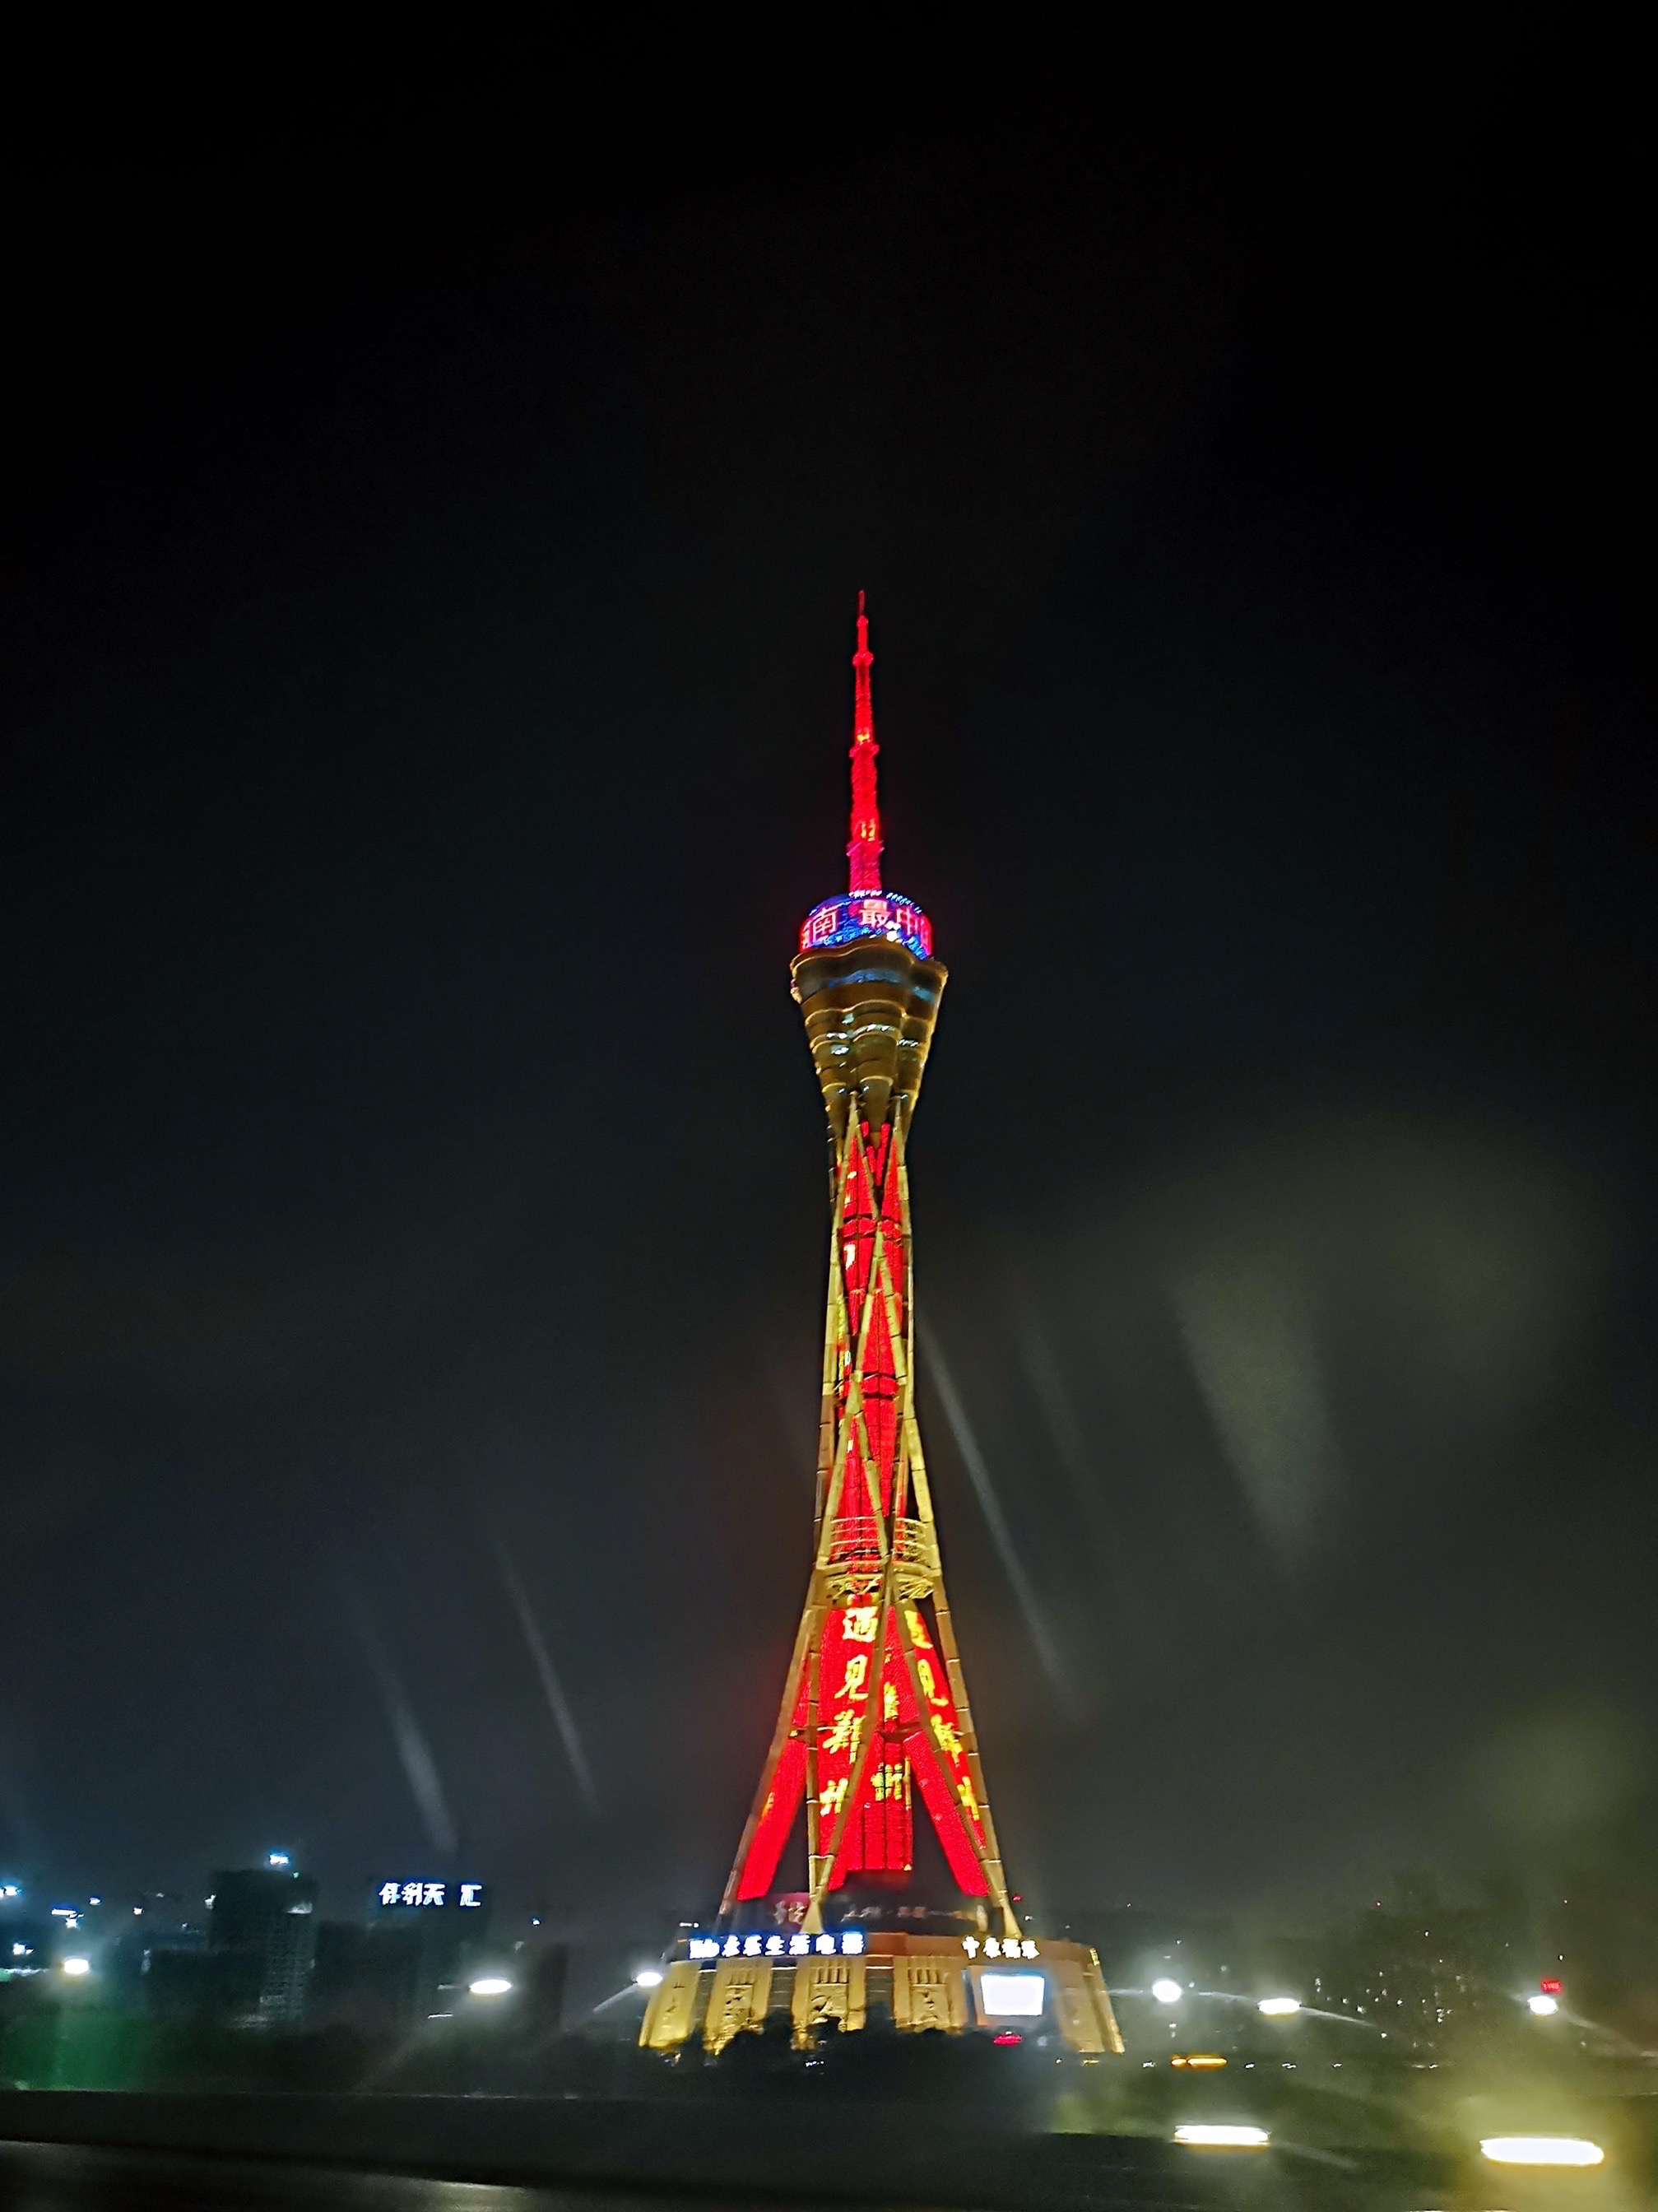 中原福塔（FU Tower），又名“河南广播电视塔”，位于中国河南省郑州市管城回族区航海东路与机场高